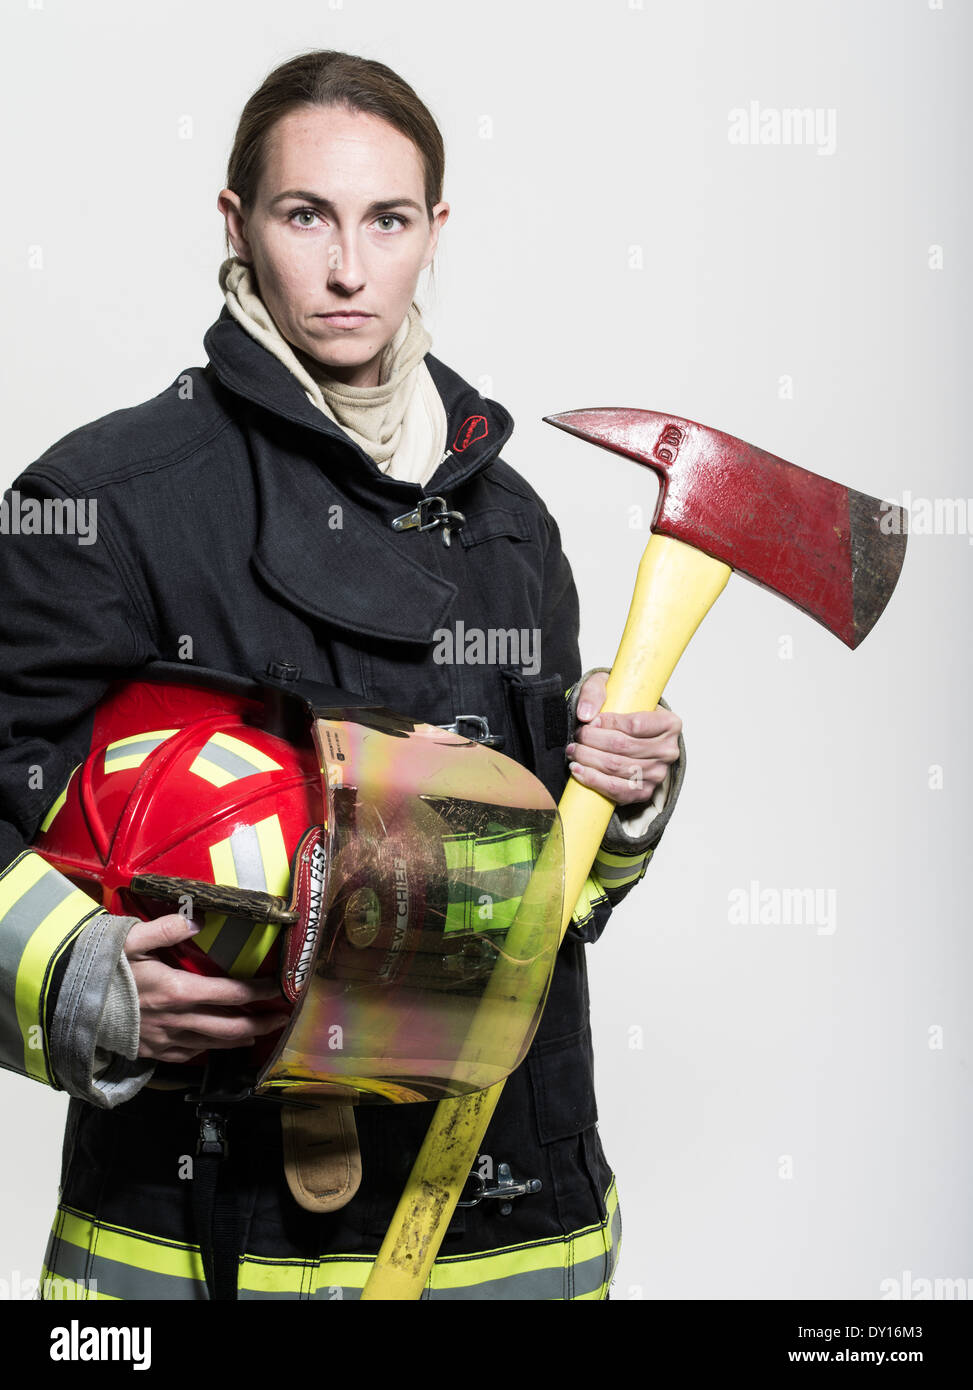 Firefighter femmina in estinzione strutturali uniforme con apparato di respirazione e ax Foto Stock